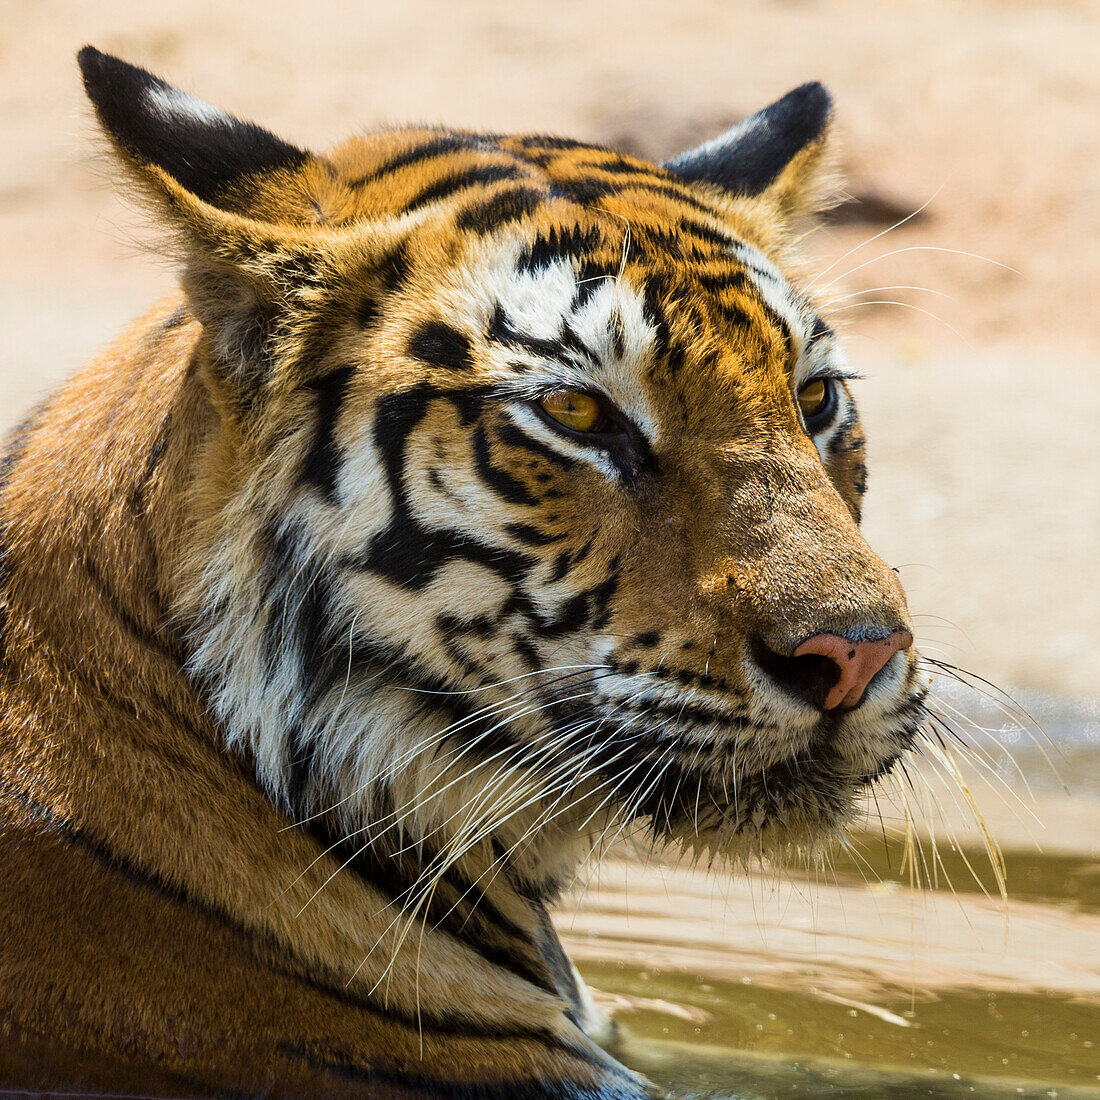 Asien. Indien. Bengaltigerweibchen (Pantera tigris tigris) genießt die Kühle eines Wasserlochs im Bandhavgarh Tiger Reserve.